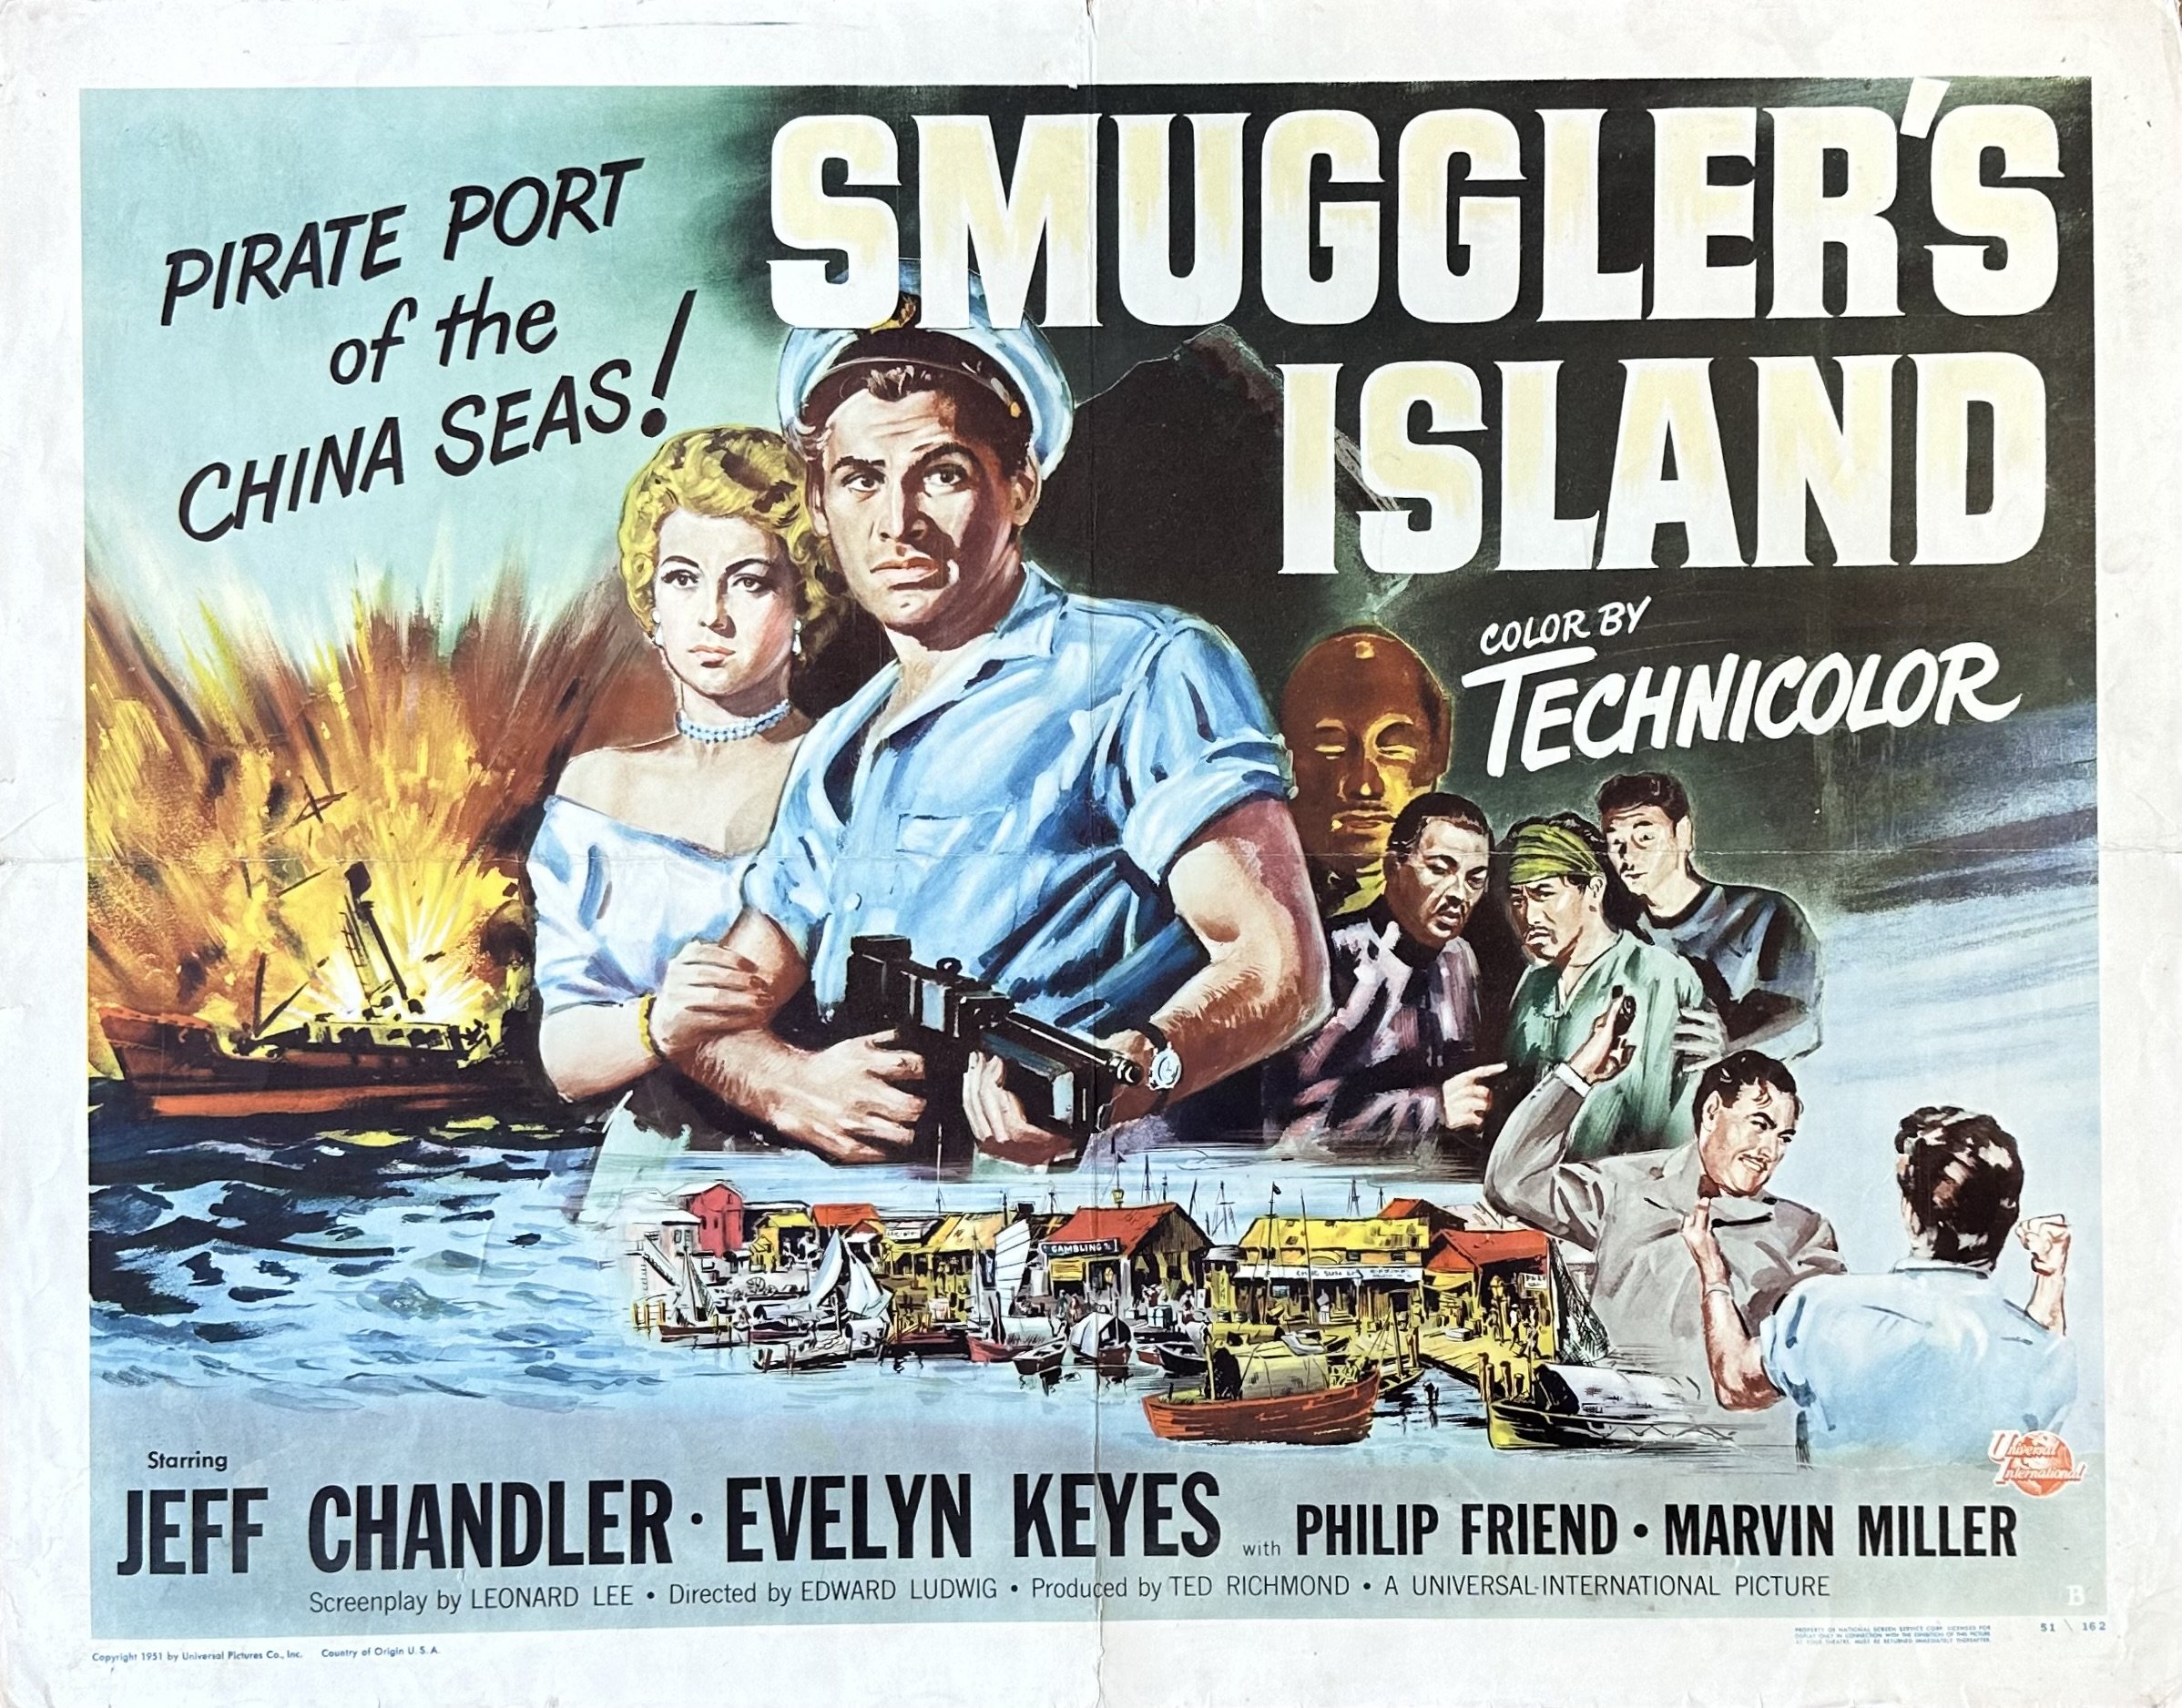 Original vintage cinema movie poster for Smuggler's Island